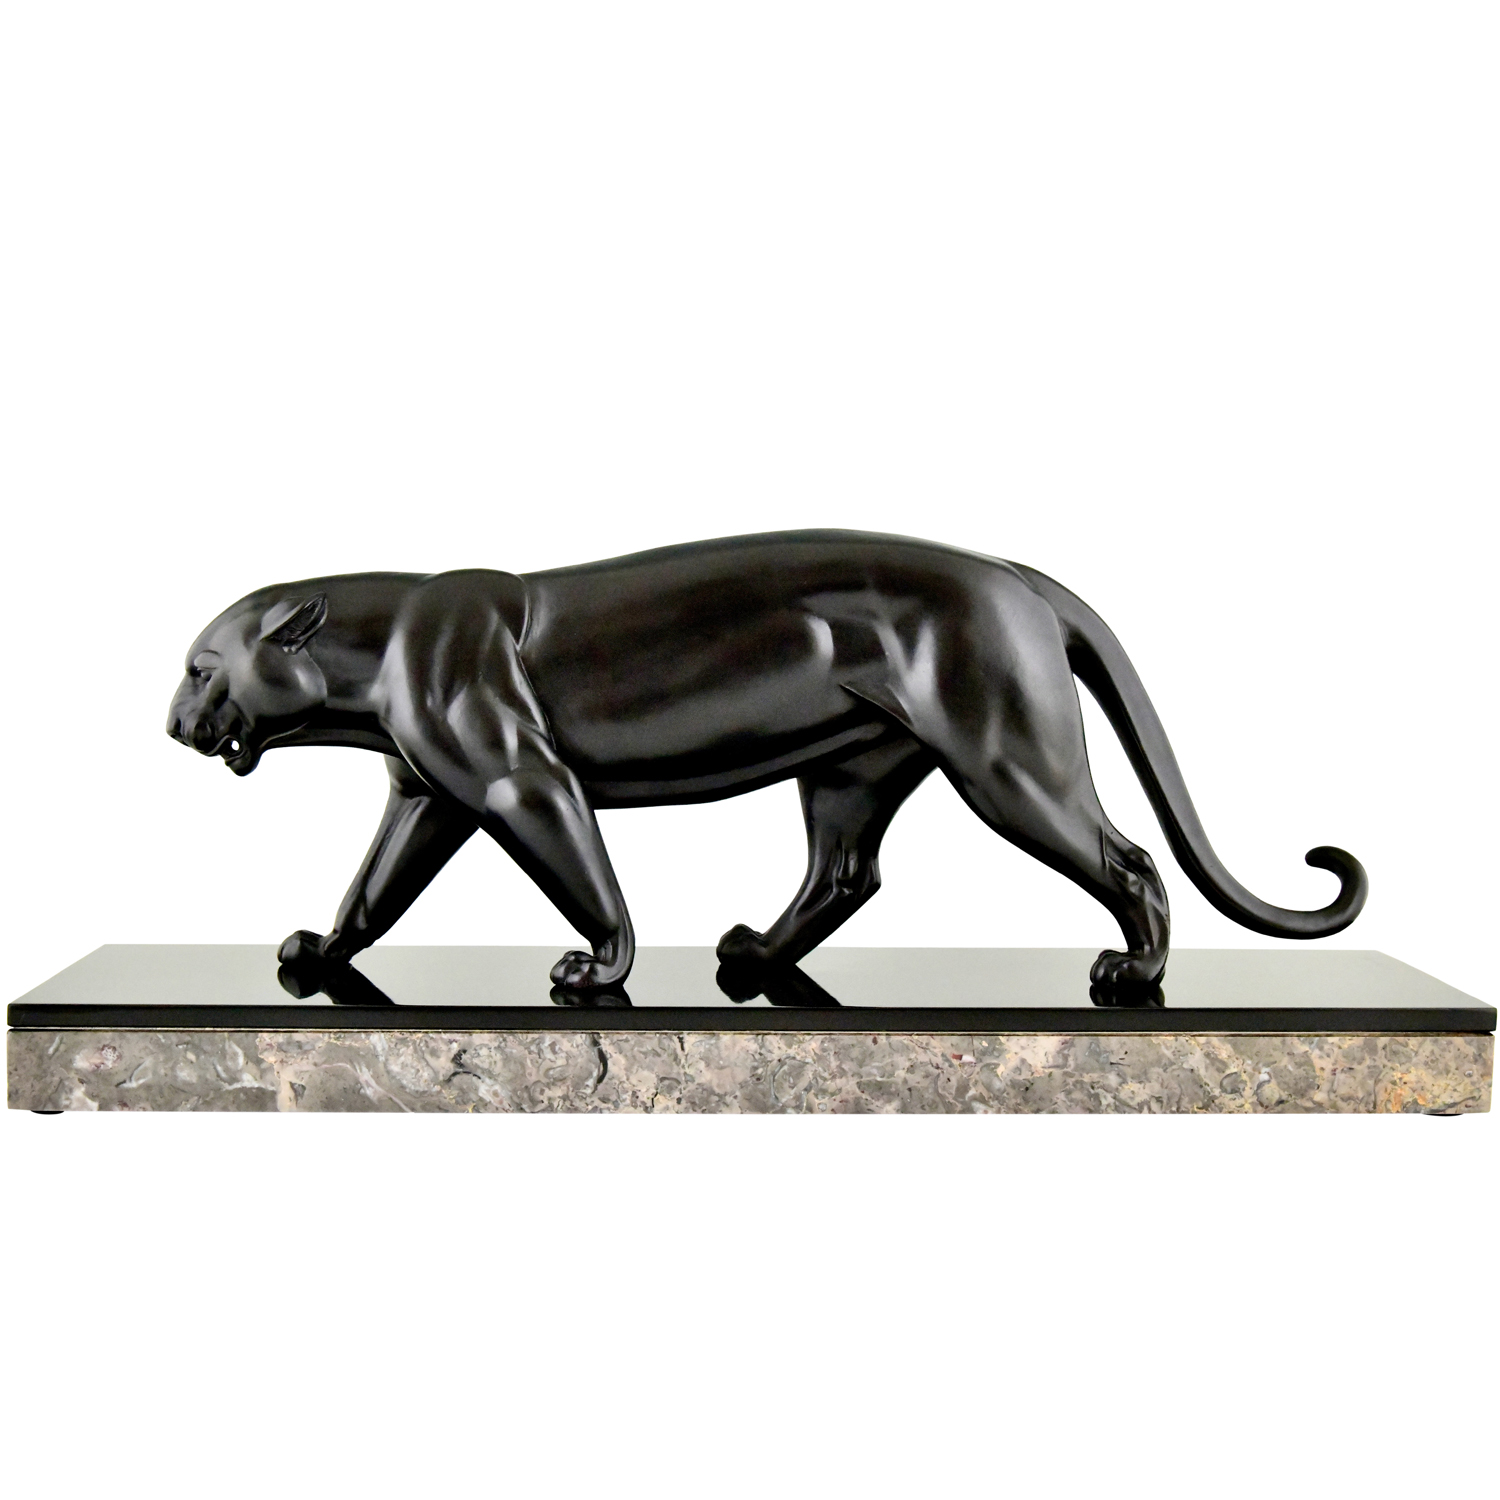 Irenee Rochard Art Deco panther sculpture